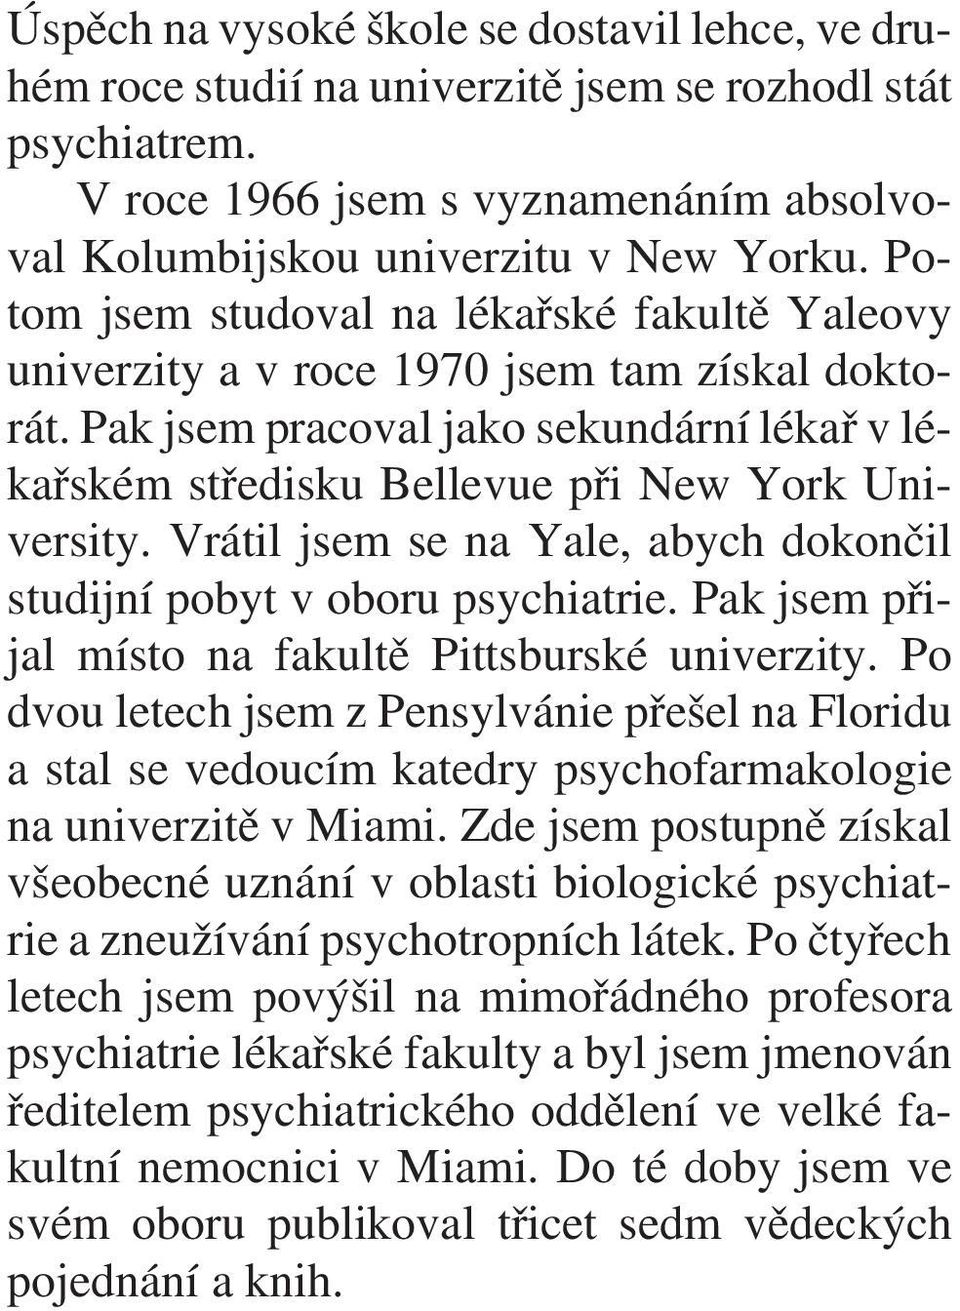 Vrátil jsem se na Yale, abych dokonèil studijní pobyt v oboru psychiatrie. Pak jsem pøijal místo na fakultì Pittsburské univerzity.